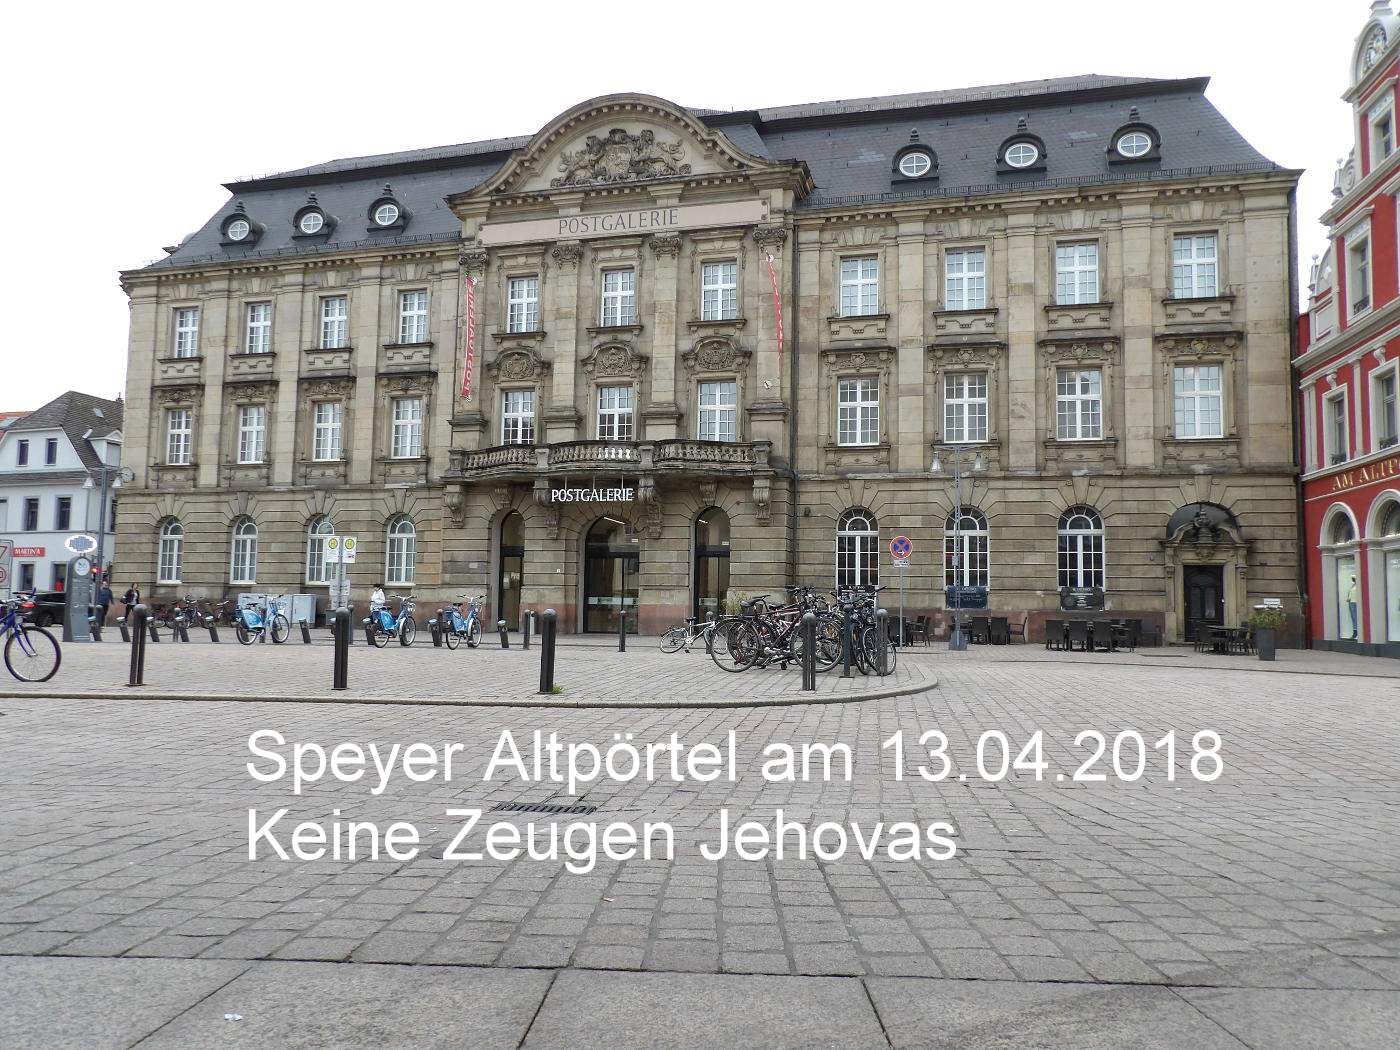 Zeugen Jehovas haben gelernt, dass sie freitags nicht mehr am Ältpörtel in Speyer aufzutauchen haben